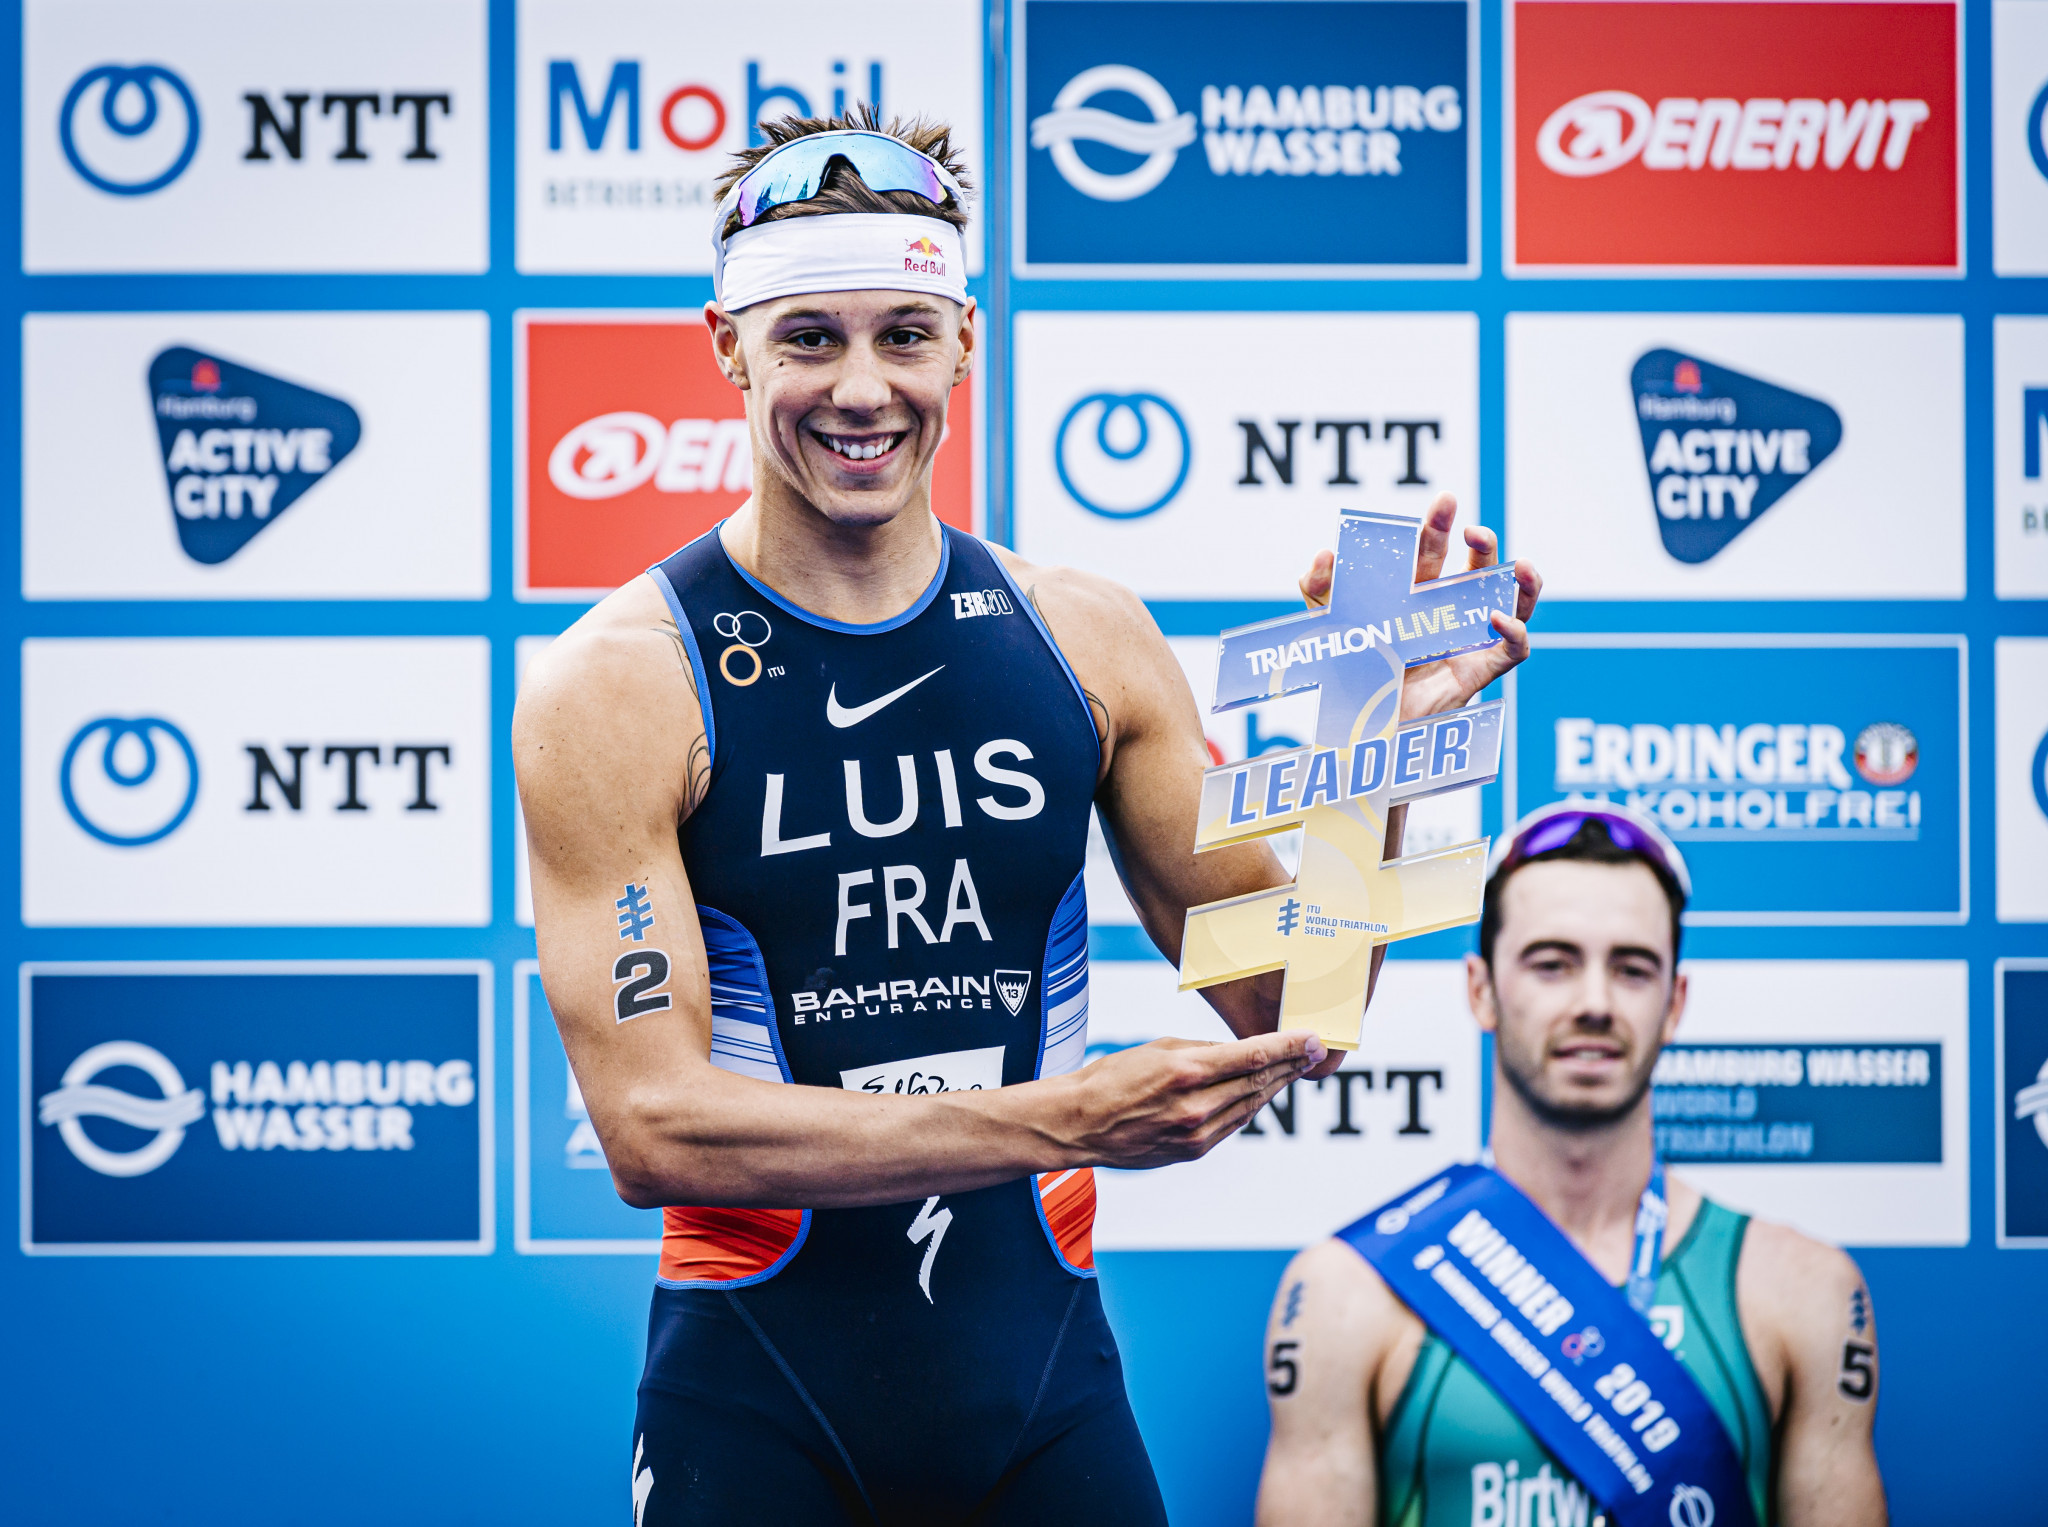 Rankings leader Luis targets World Triathlon Series victory in Edmonton